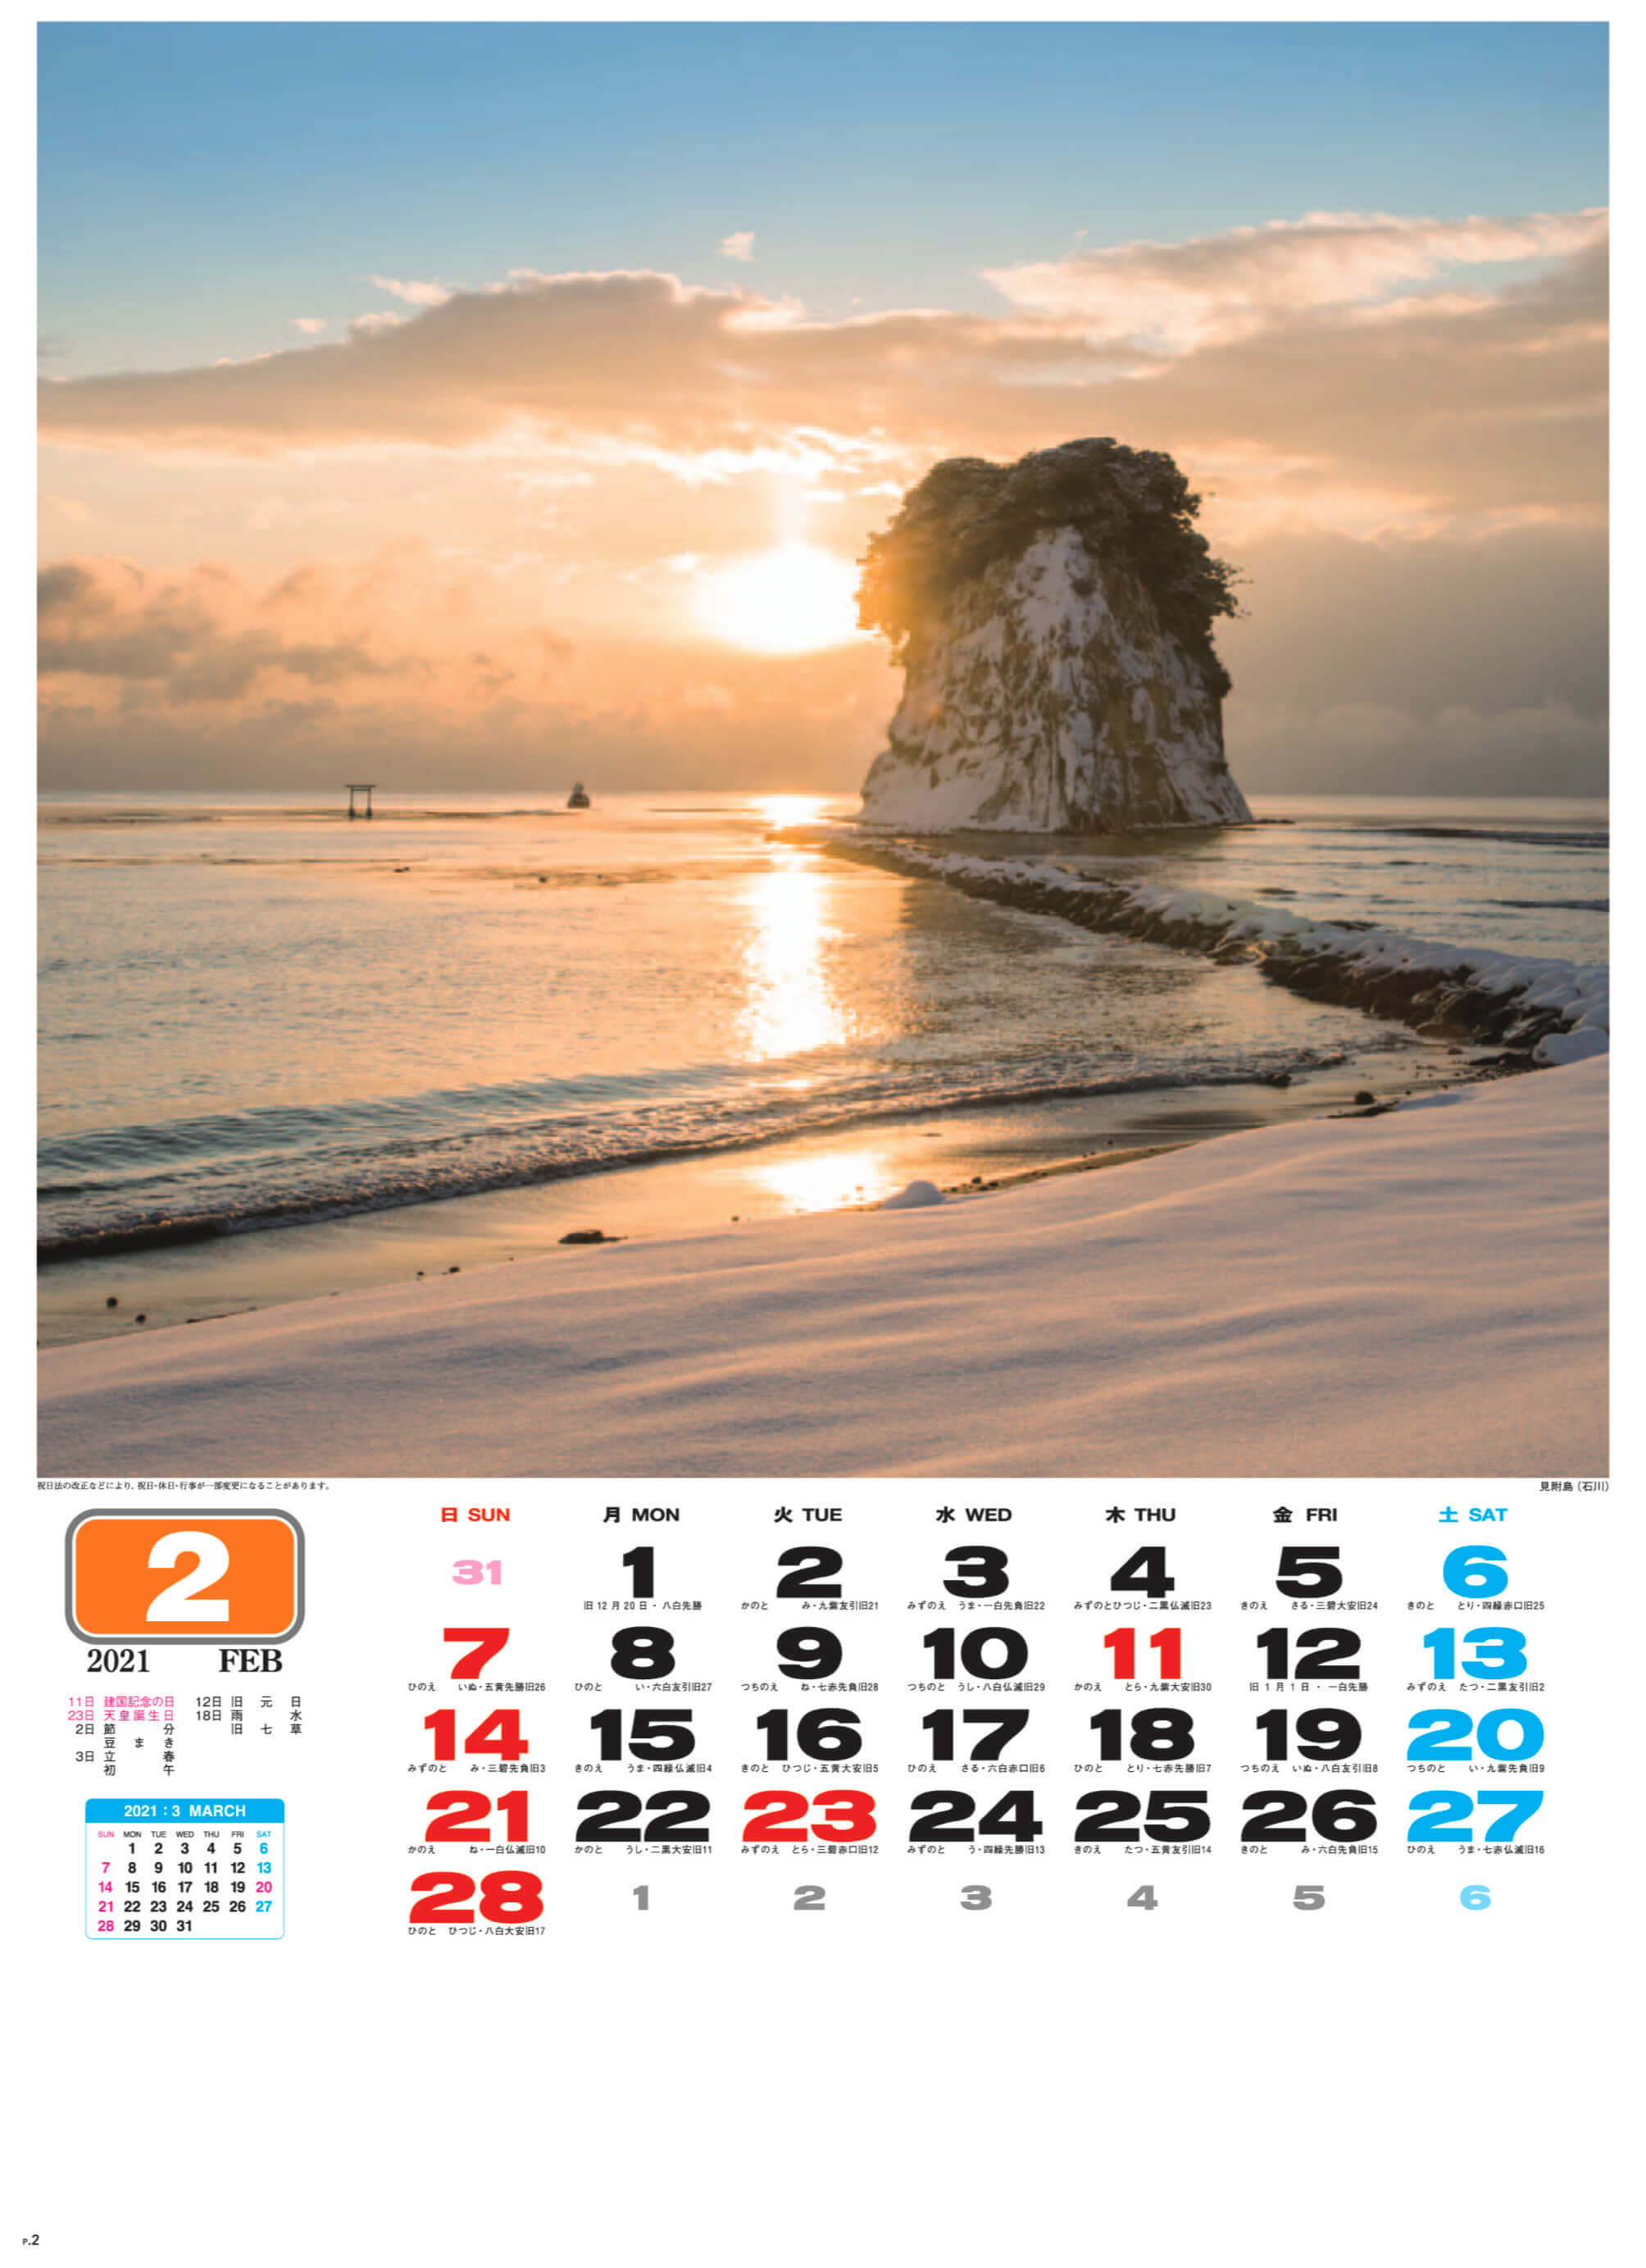 見附島(石川) 美しき日本 2021年カレンダーの画像